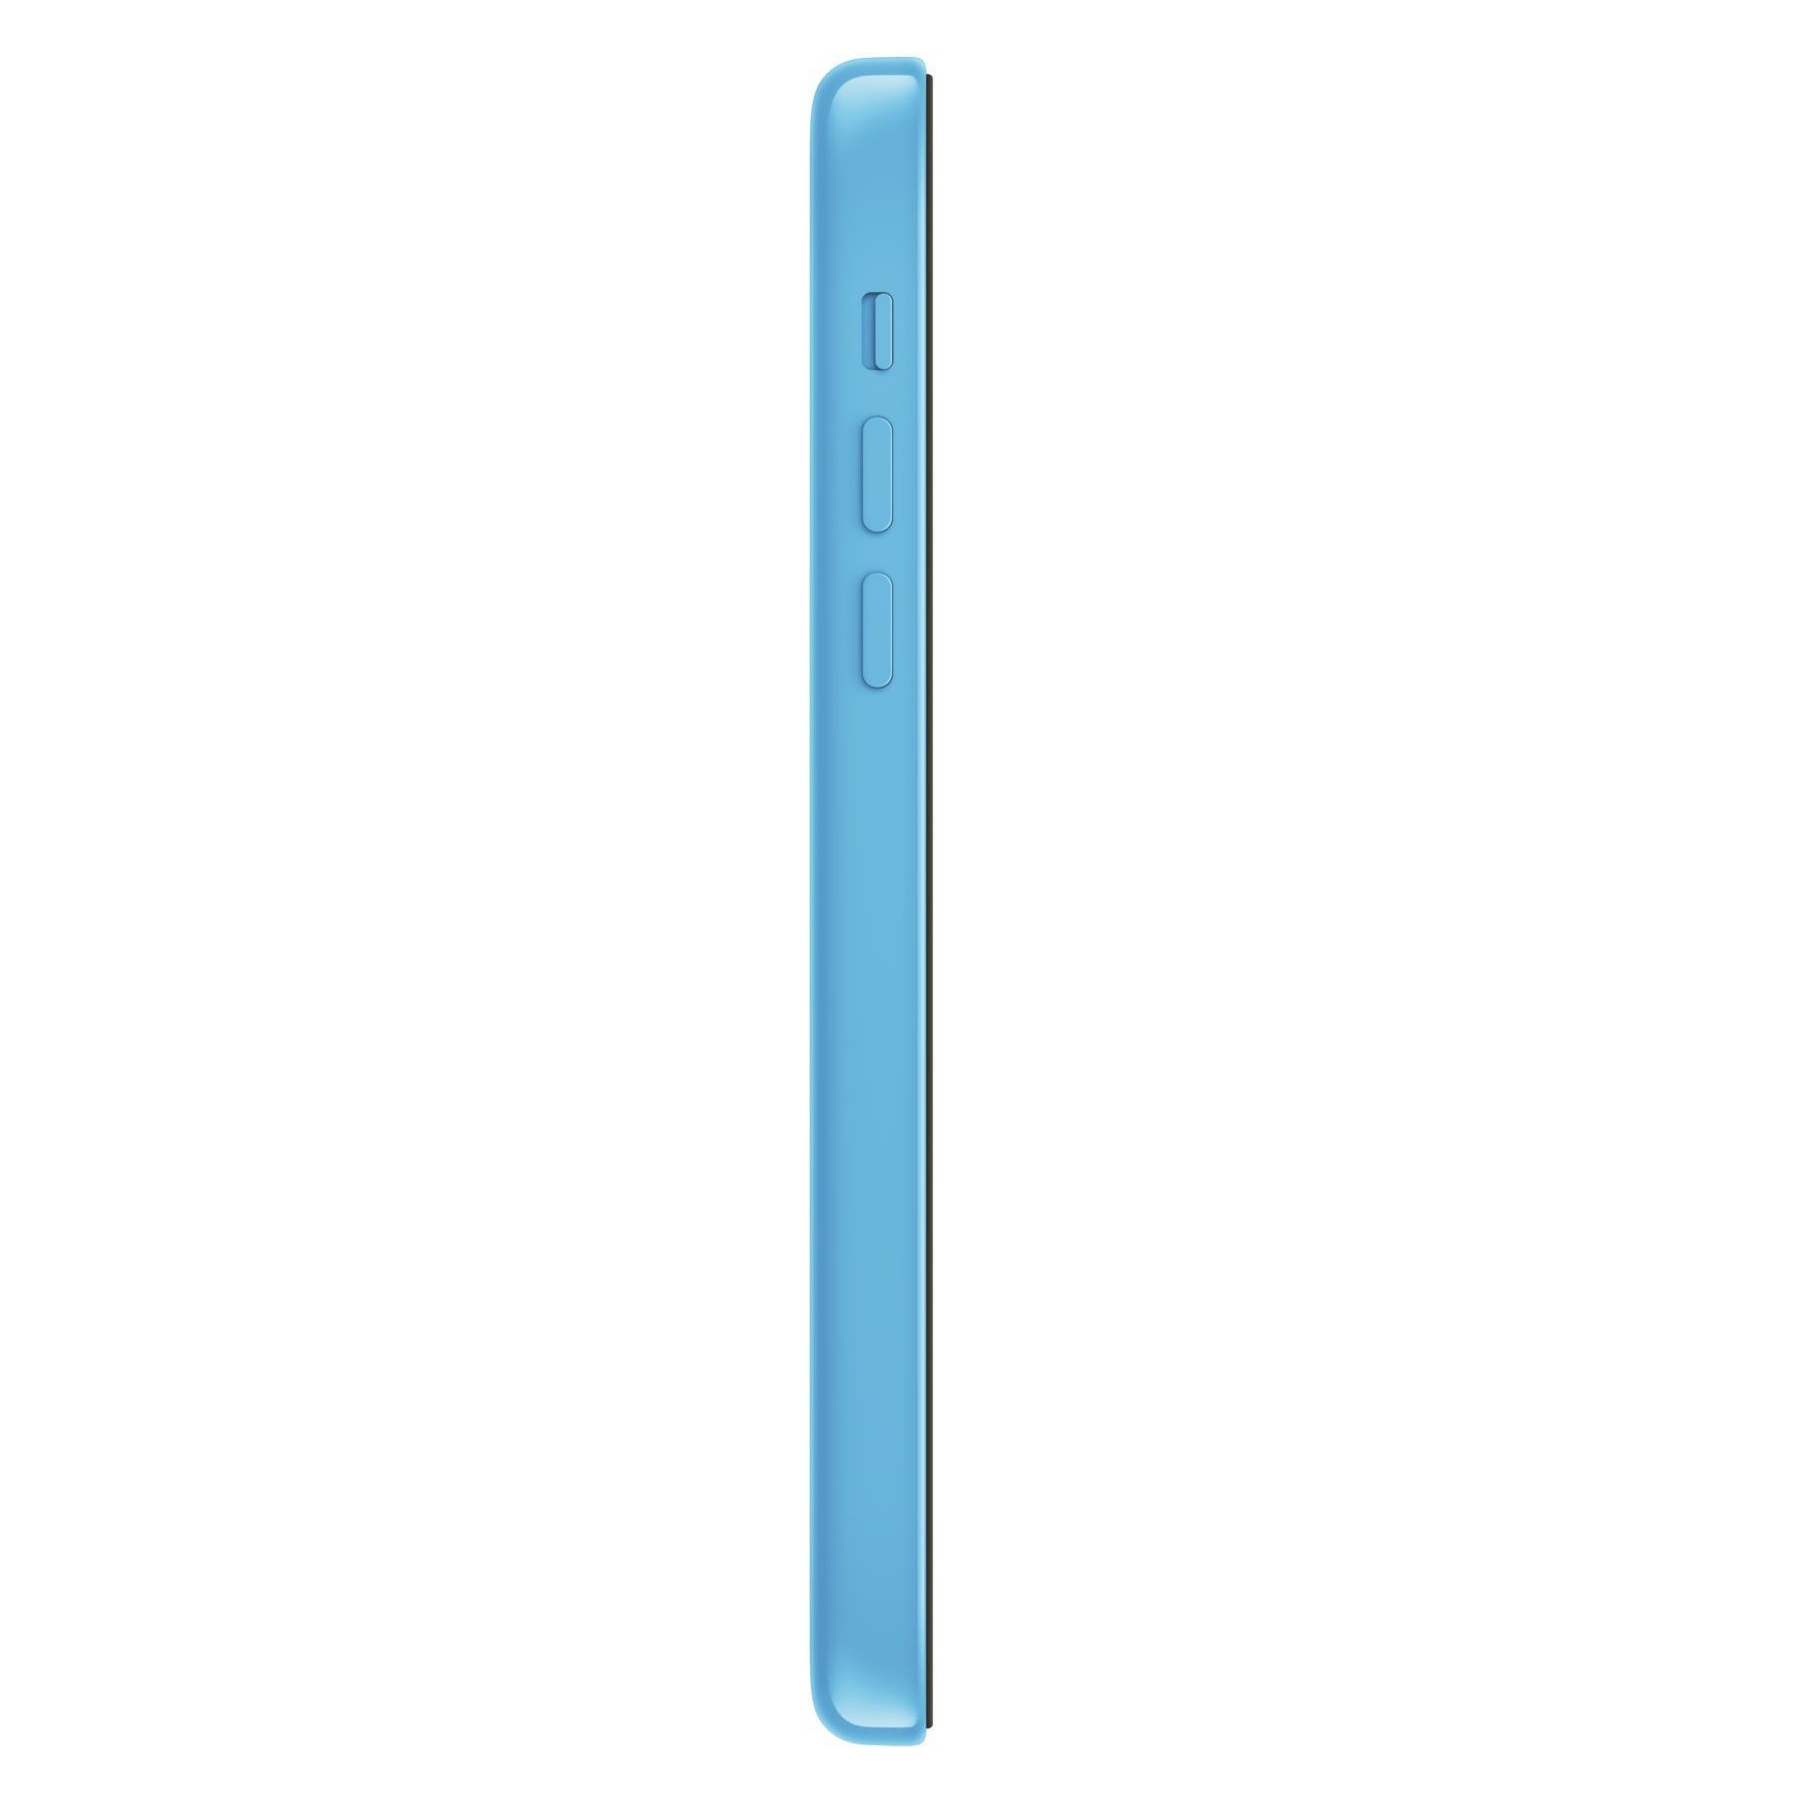 Смартфон Apple iPhone 5C 8Gb Blue (MG902RU/A)